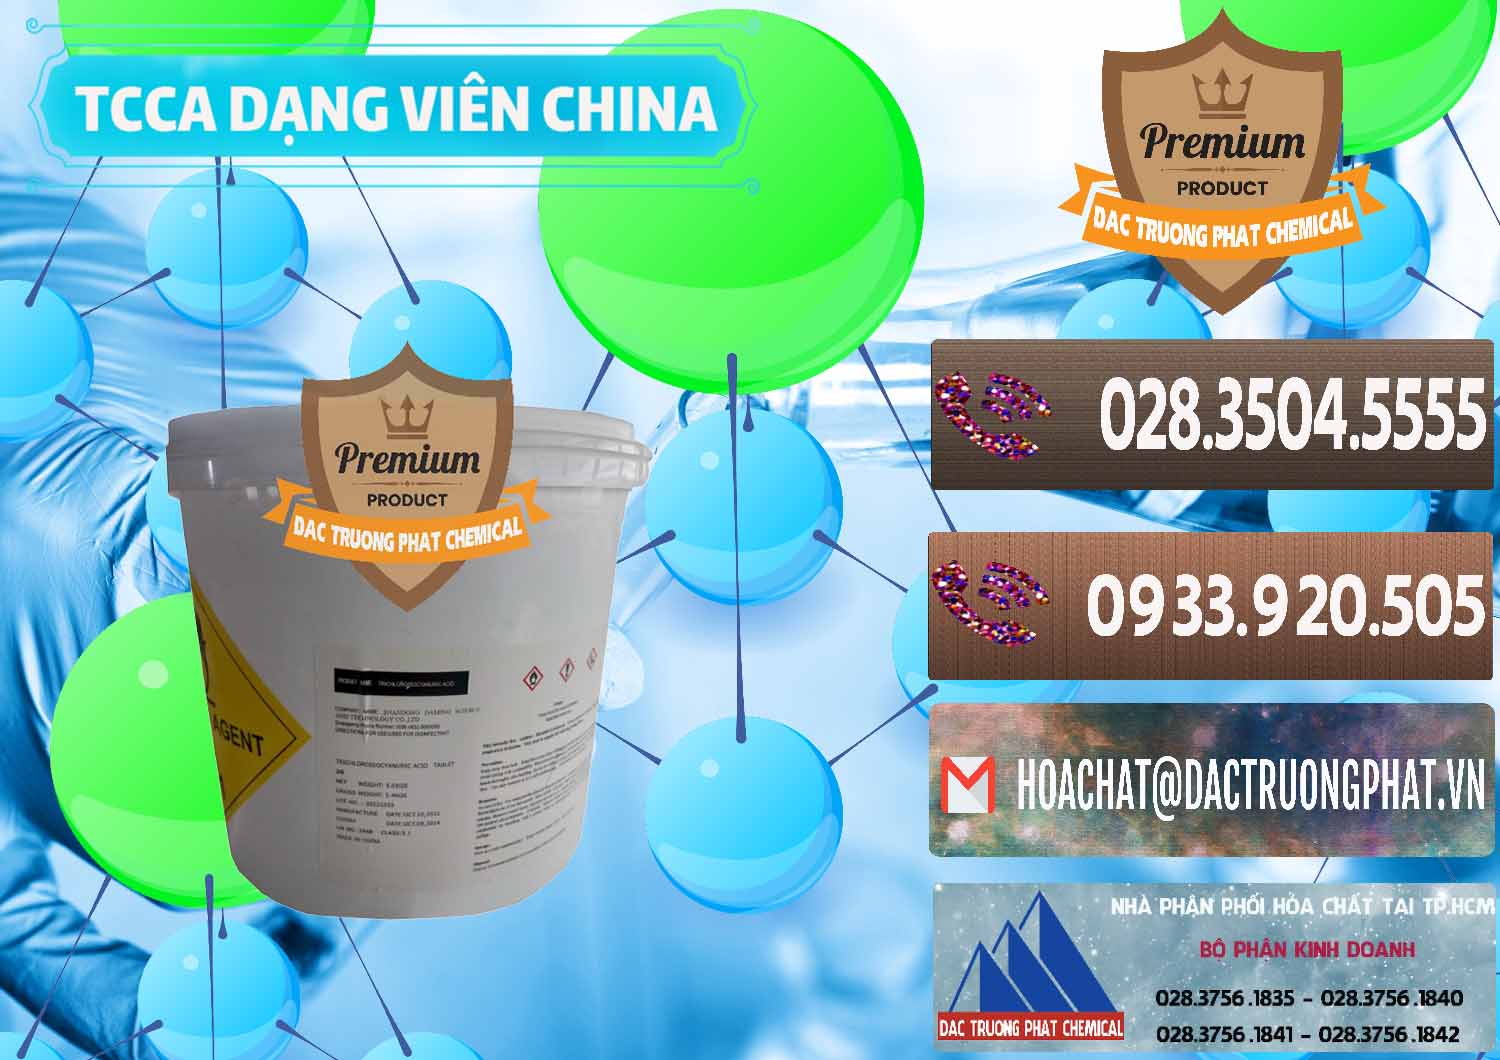 Đơn vị chuyên kinh doanh - bán TCCA - Acid Trichloroisocyanuric Dạng Viên Thùng 5kg Trung Quốc China - 0379 - Cty phân phối _ bán hóa chất tại TP.HCM - hoachatviet.net